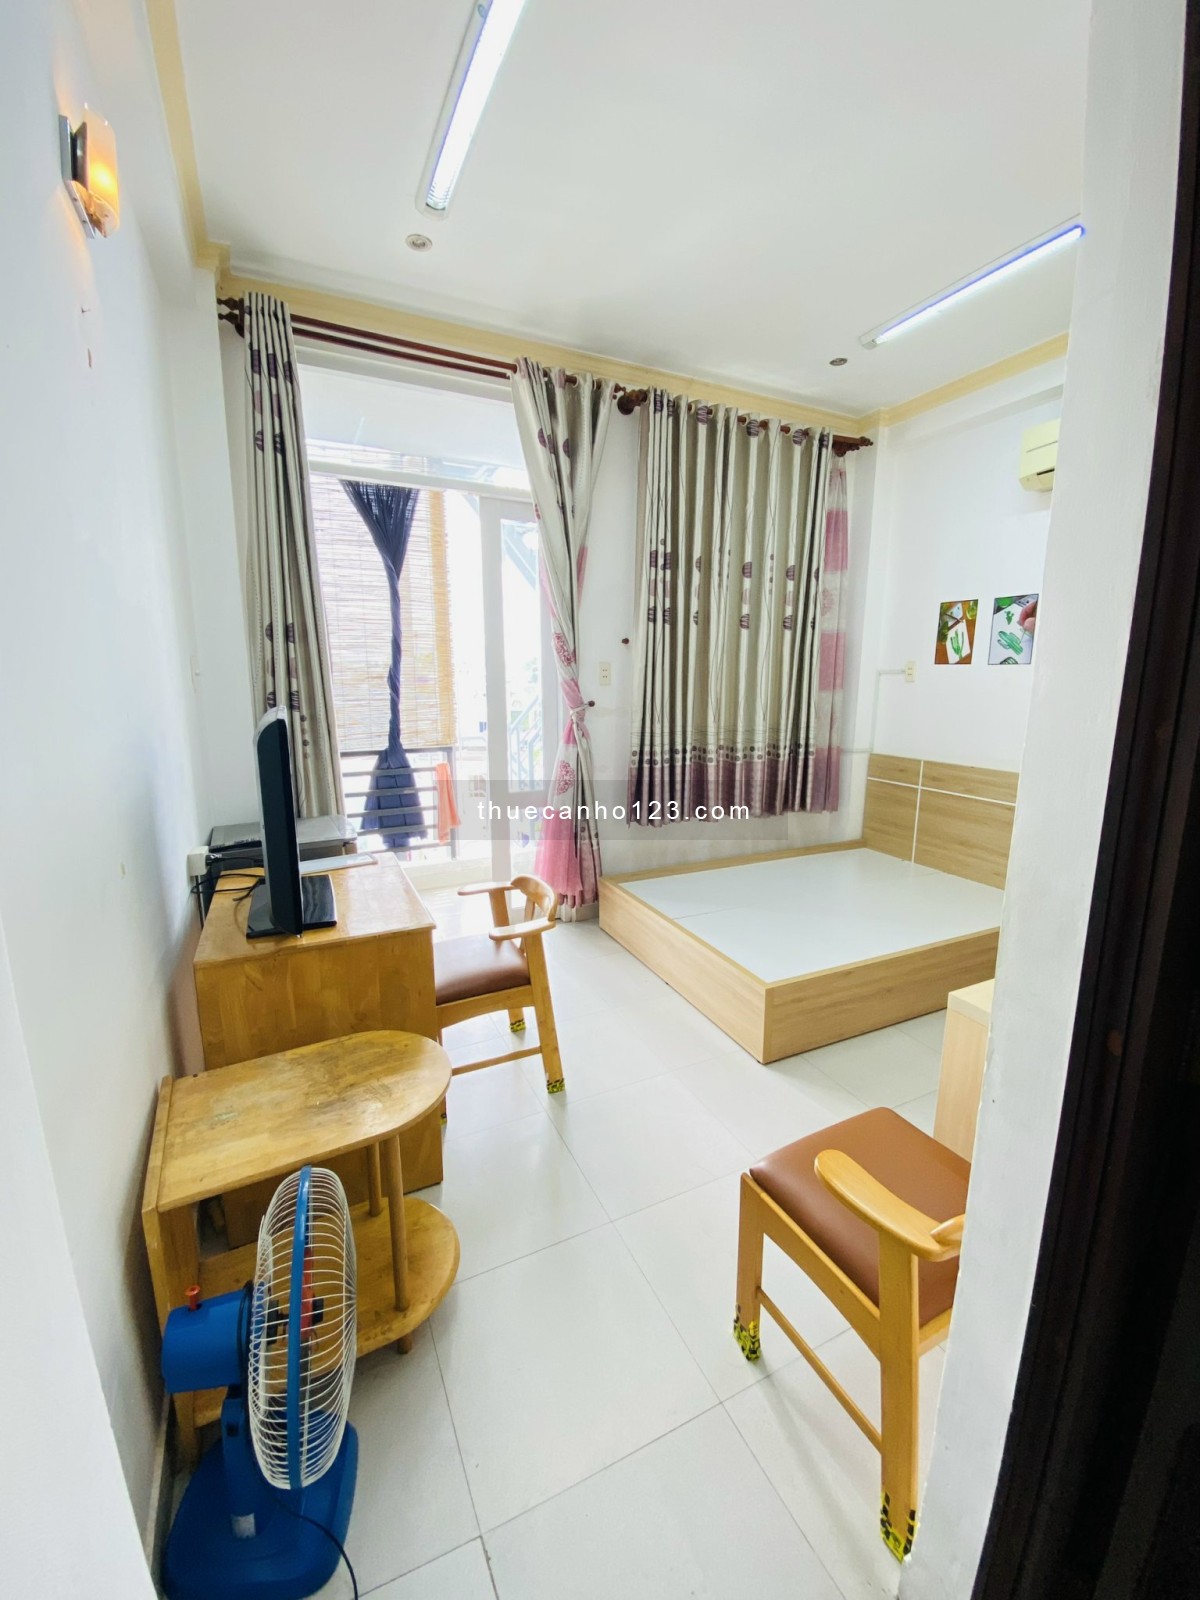 Khai trương căn hộ dịch vụ có bancony tại Bình Thạnh gần Hutech và đh Văn Lang